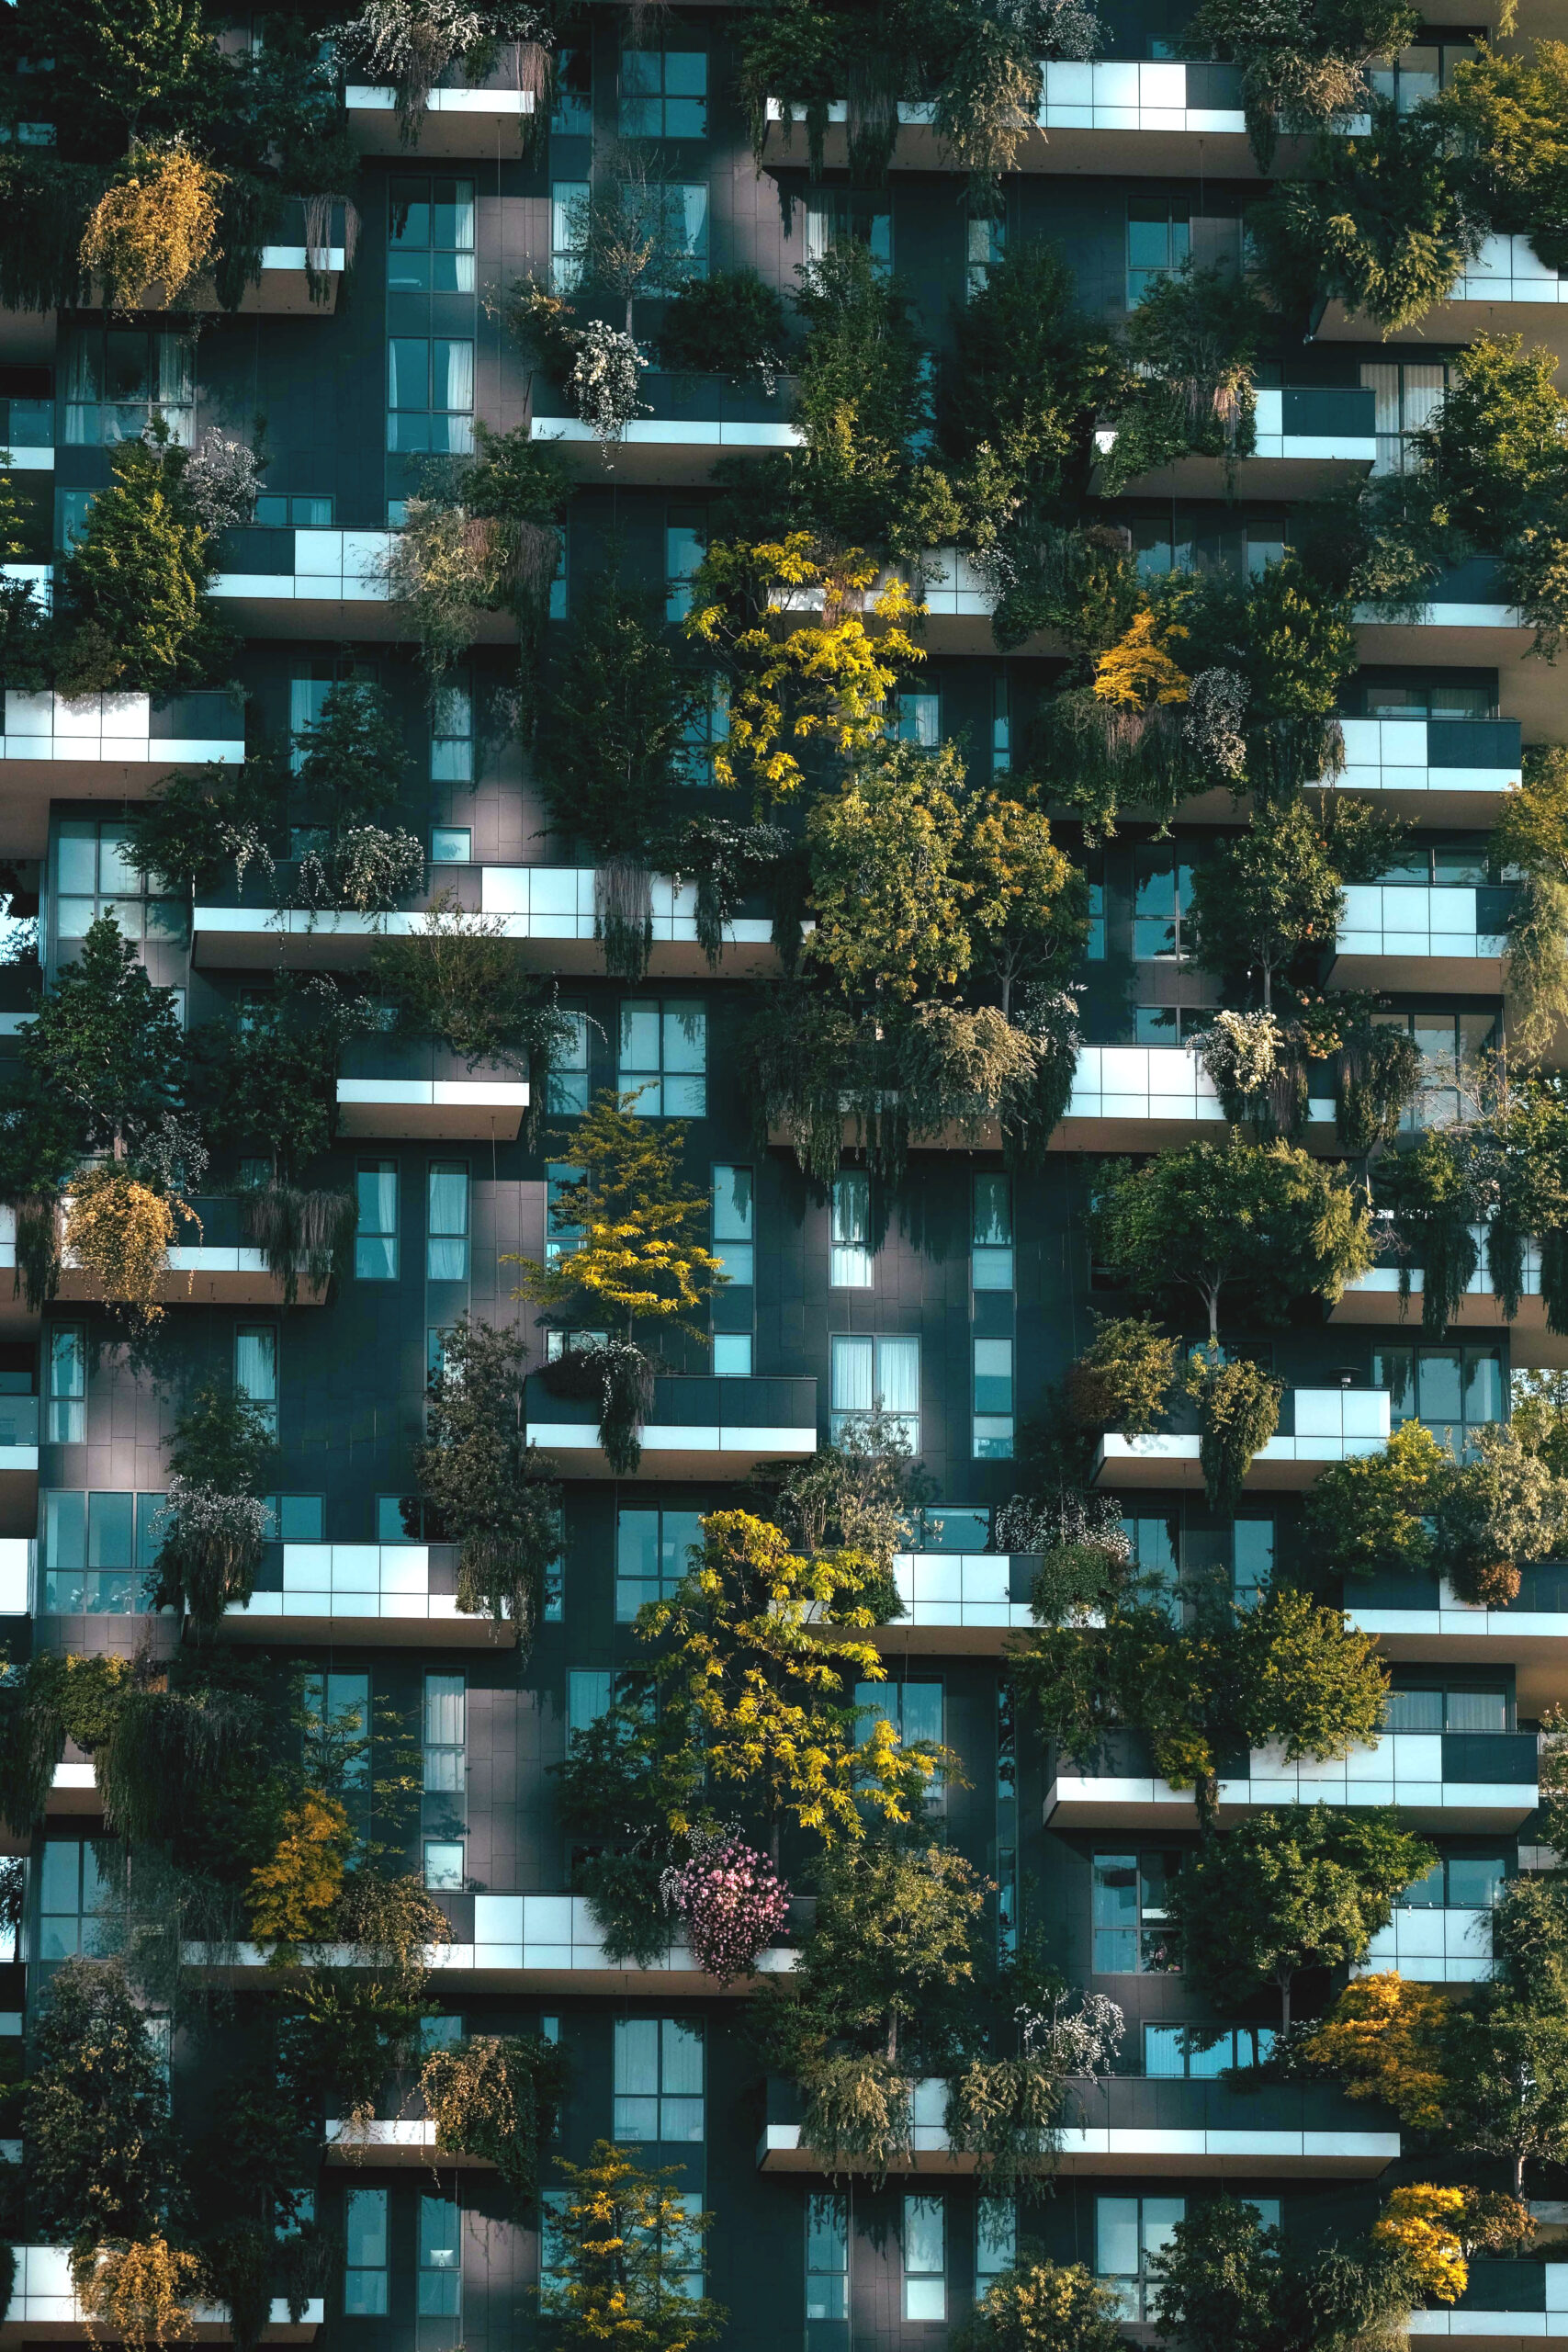 Façades d'un immeuble d'habitation avec des balcons végétalisés